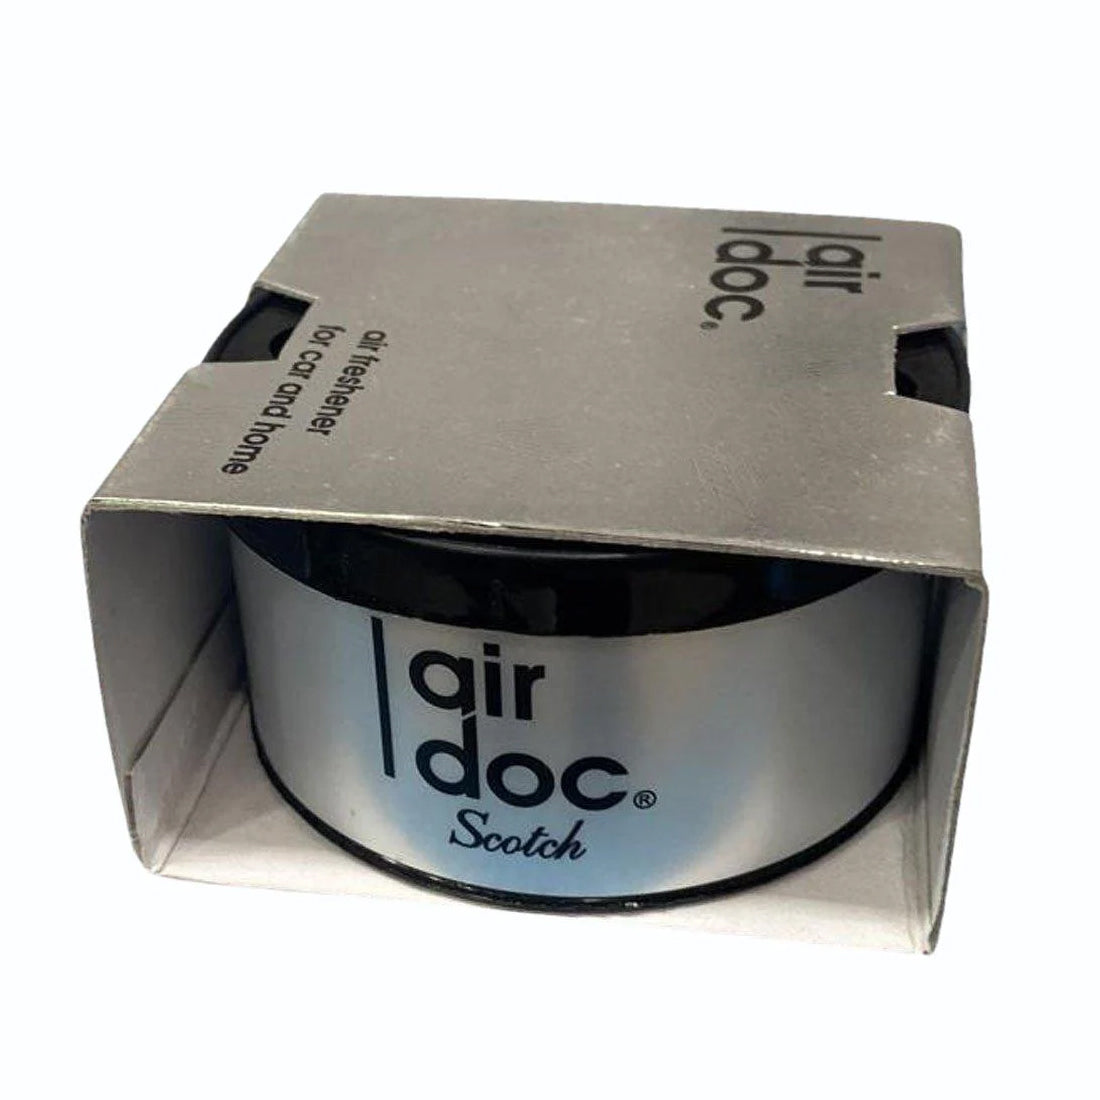 Air Doc Scotch Perfume